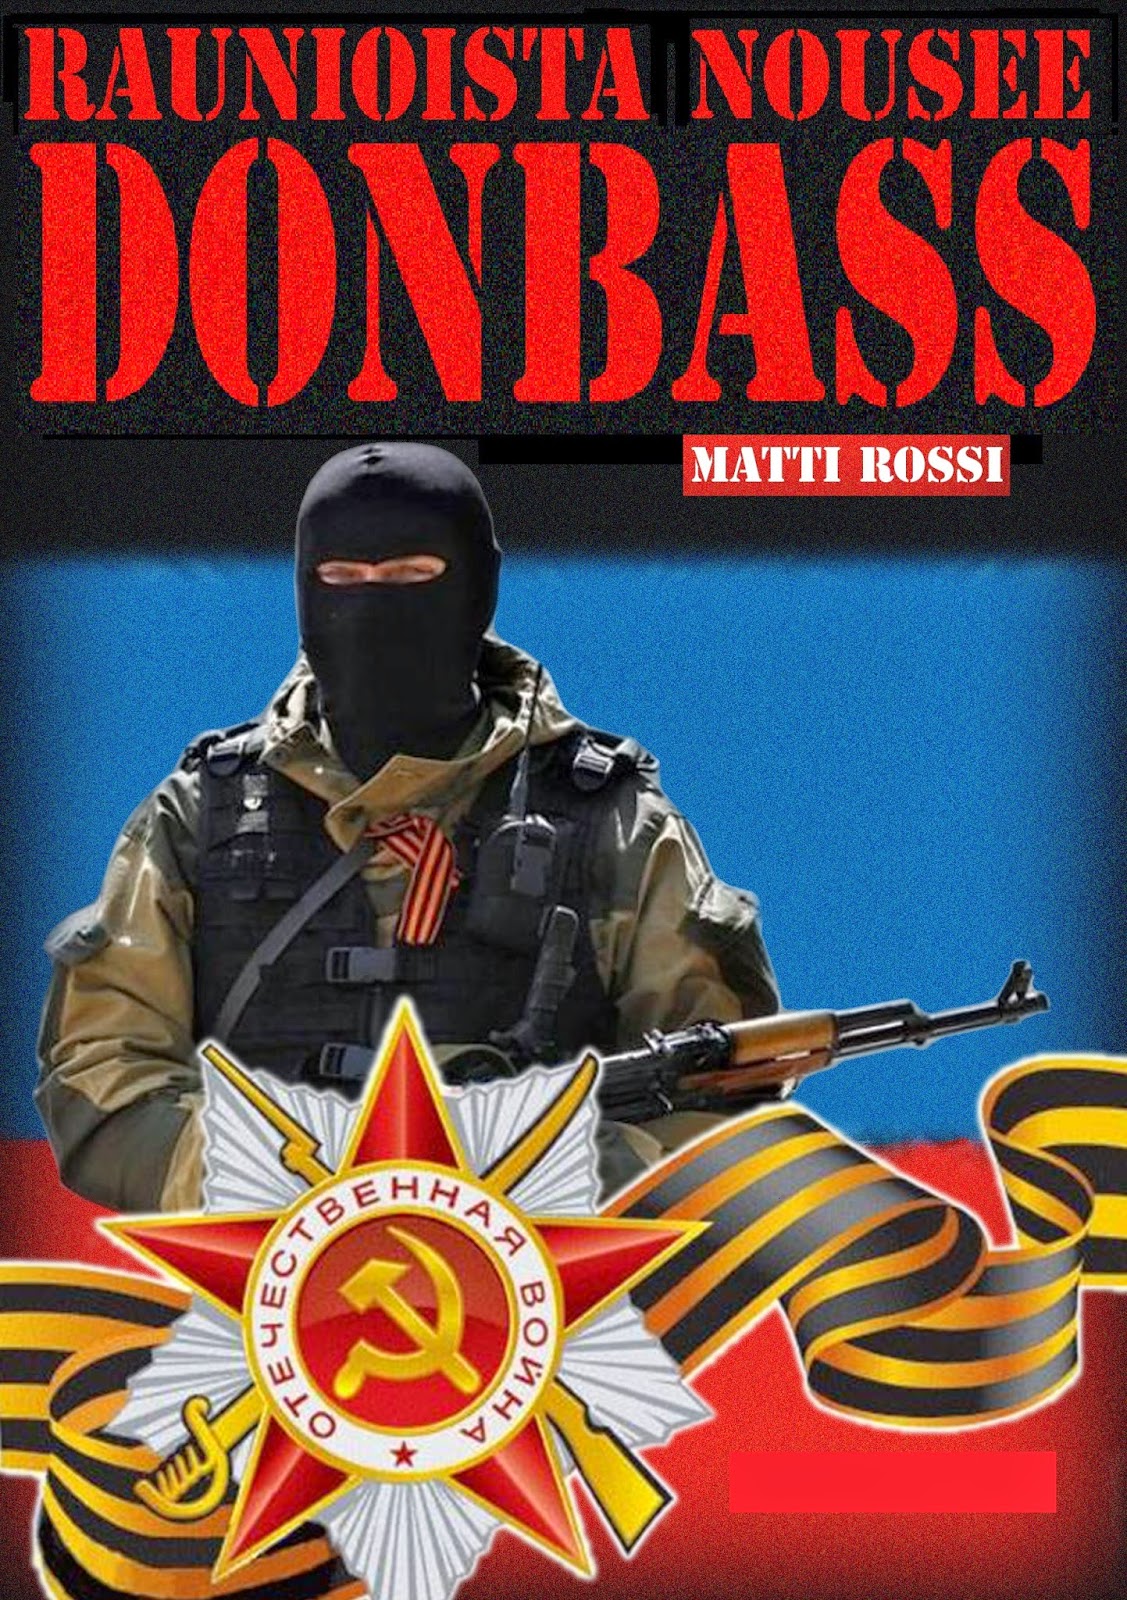 Обложка книги Матти Росси "Из руин восстанет Донбасс". 